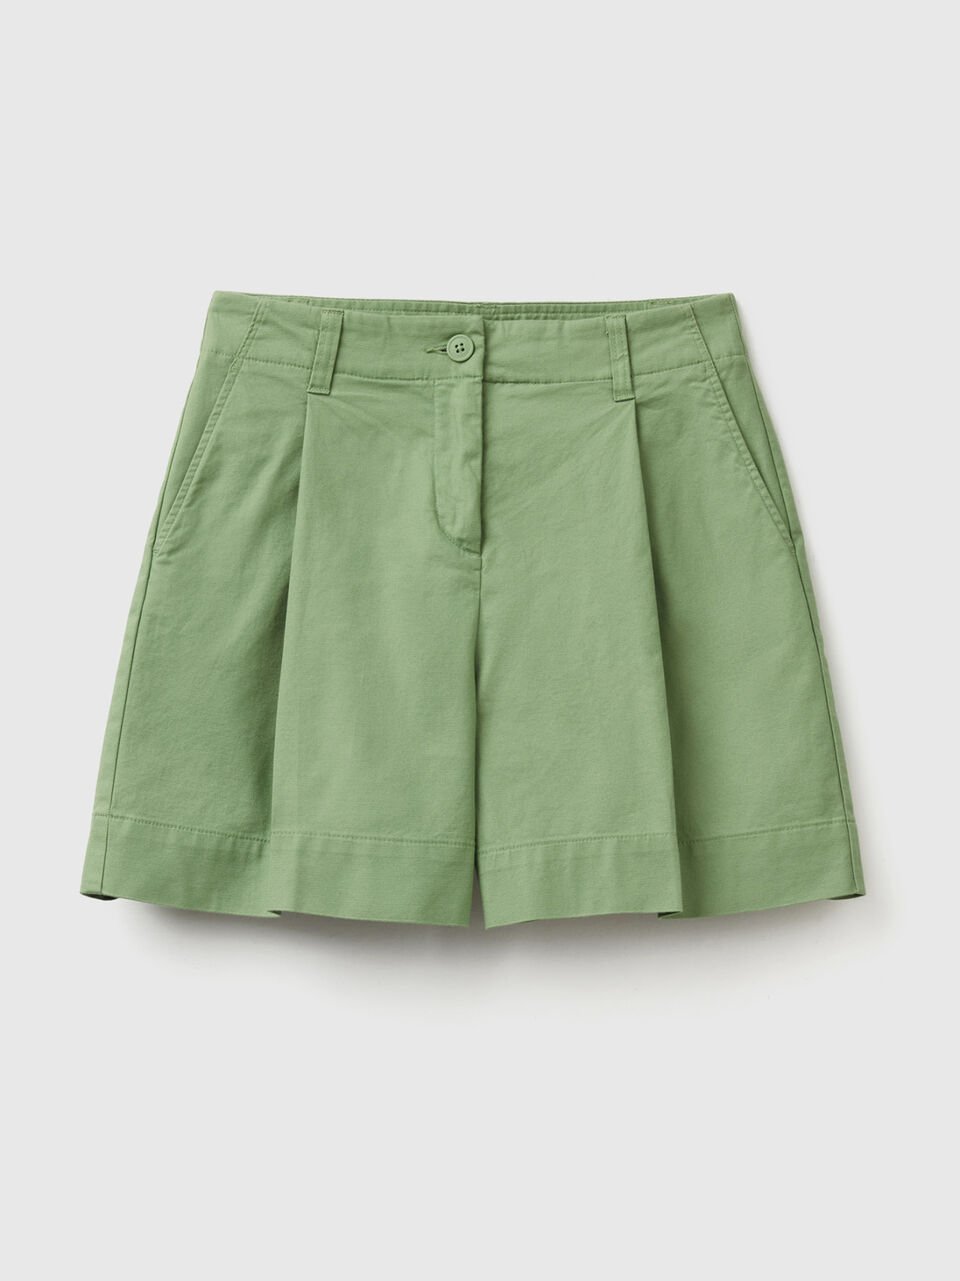 (image for) migliori Shorts in cotone elasticizzato benetton outlet